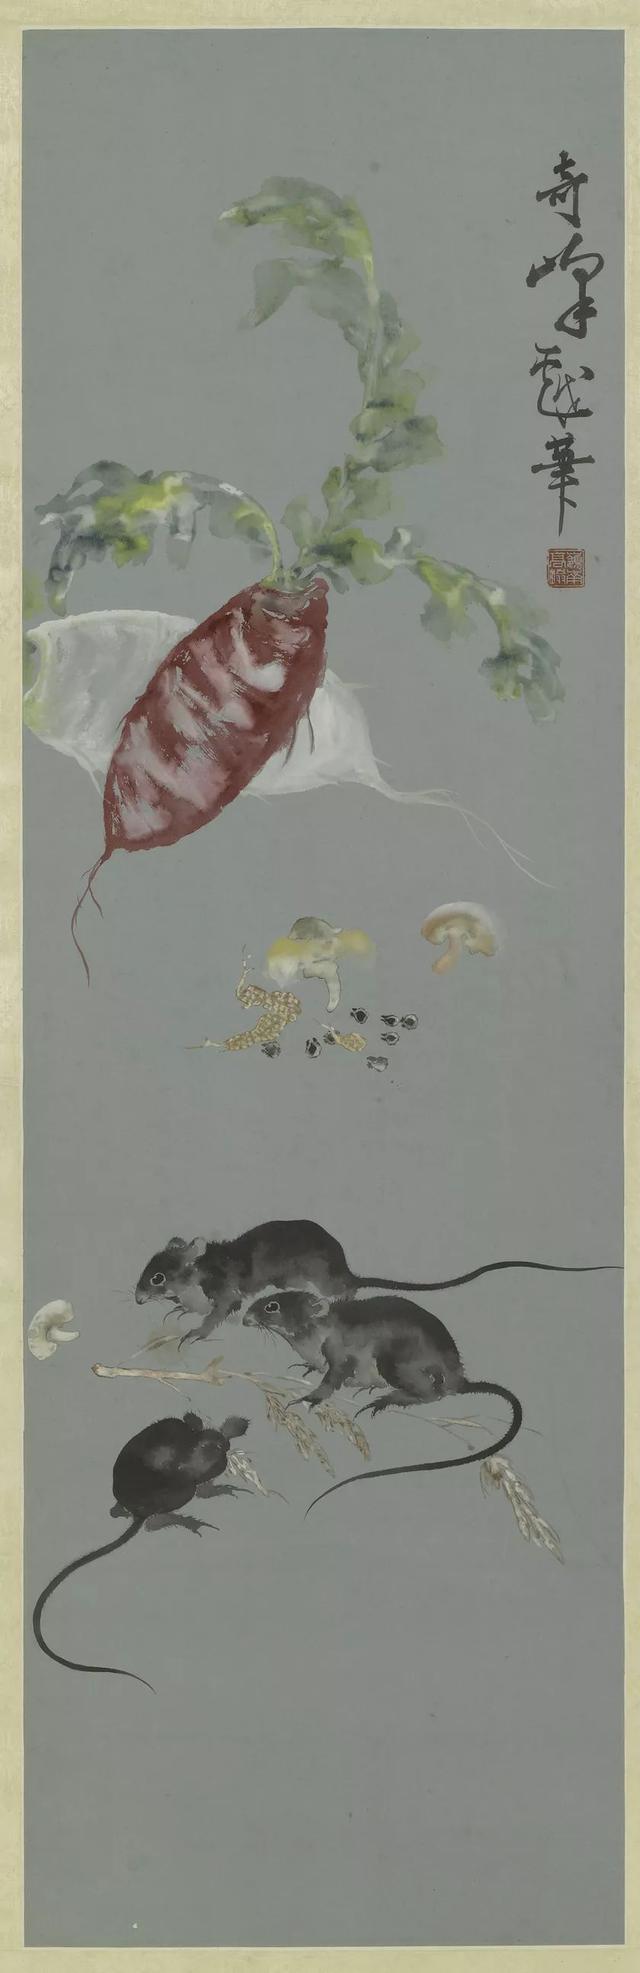 В Шанхайском музее показаны экспонаты связанные с крысой